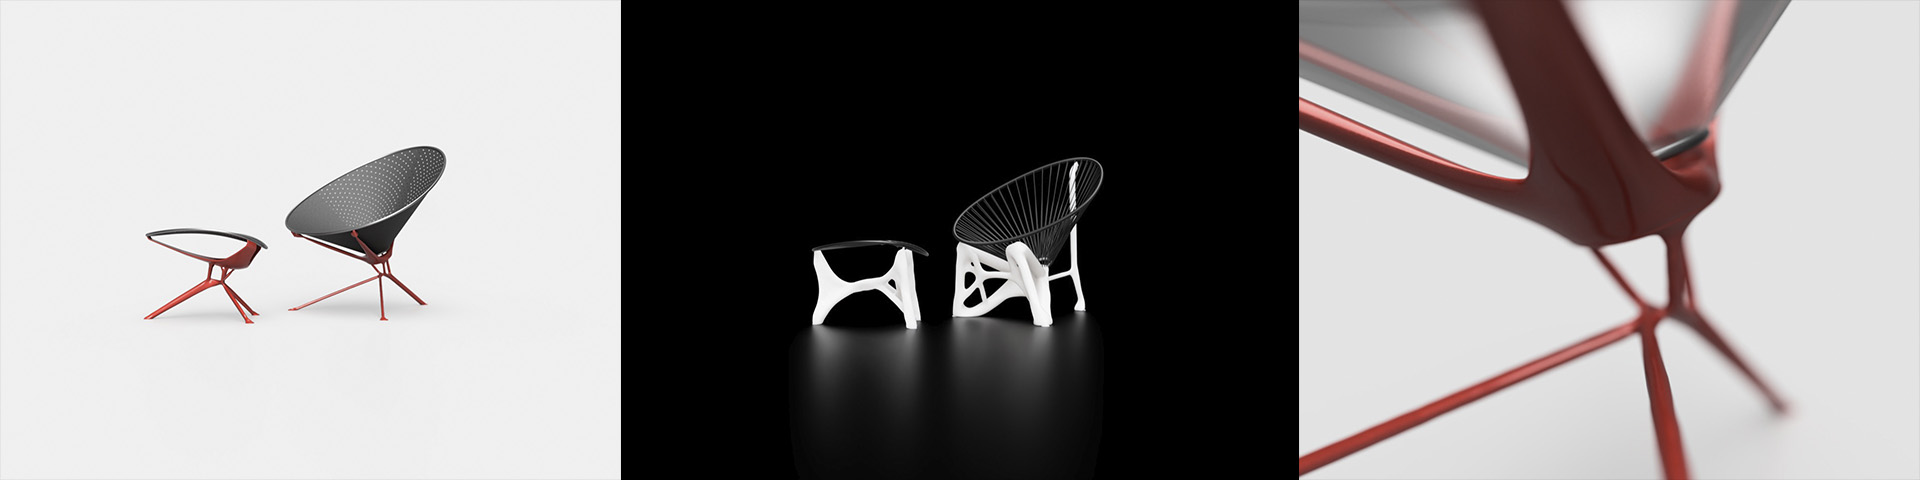 Reintrepretación de la silla acapulco con IA, Autor Camilo Ayala Monje